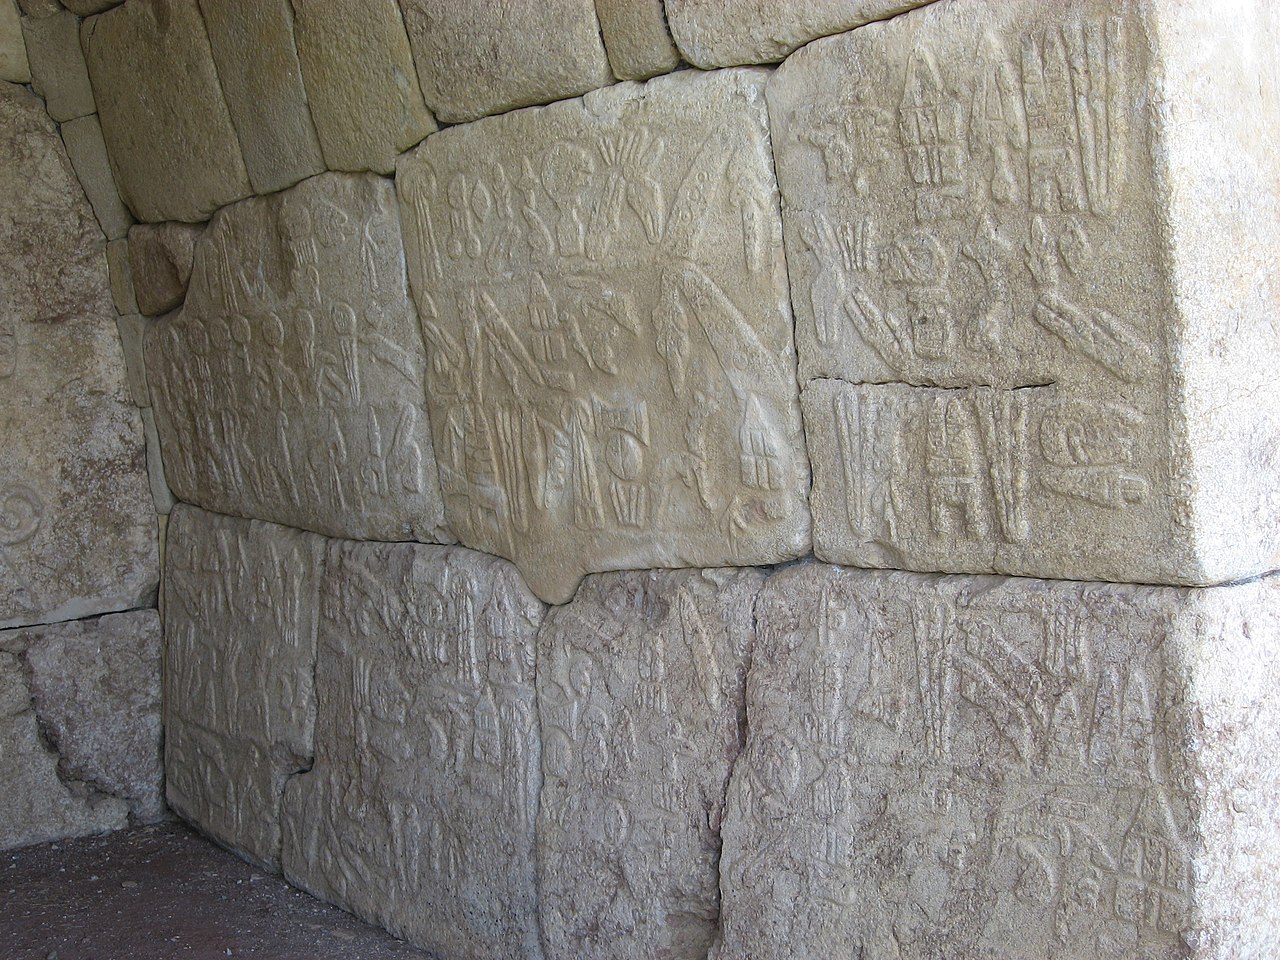 Hattusa reliefs by Suppiluliuma.